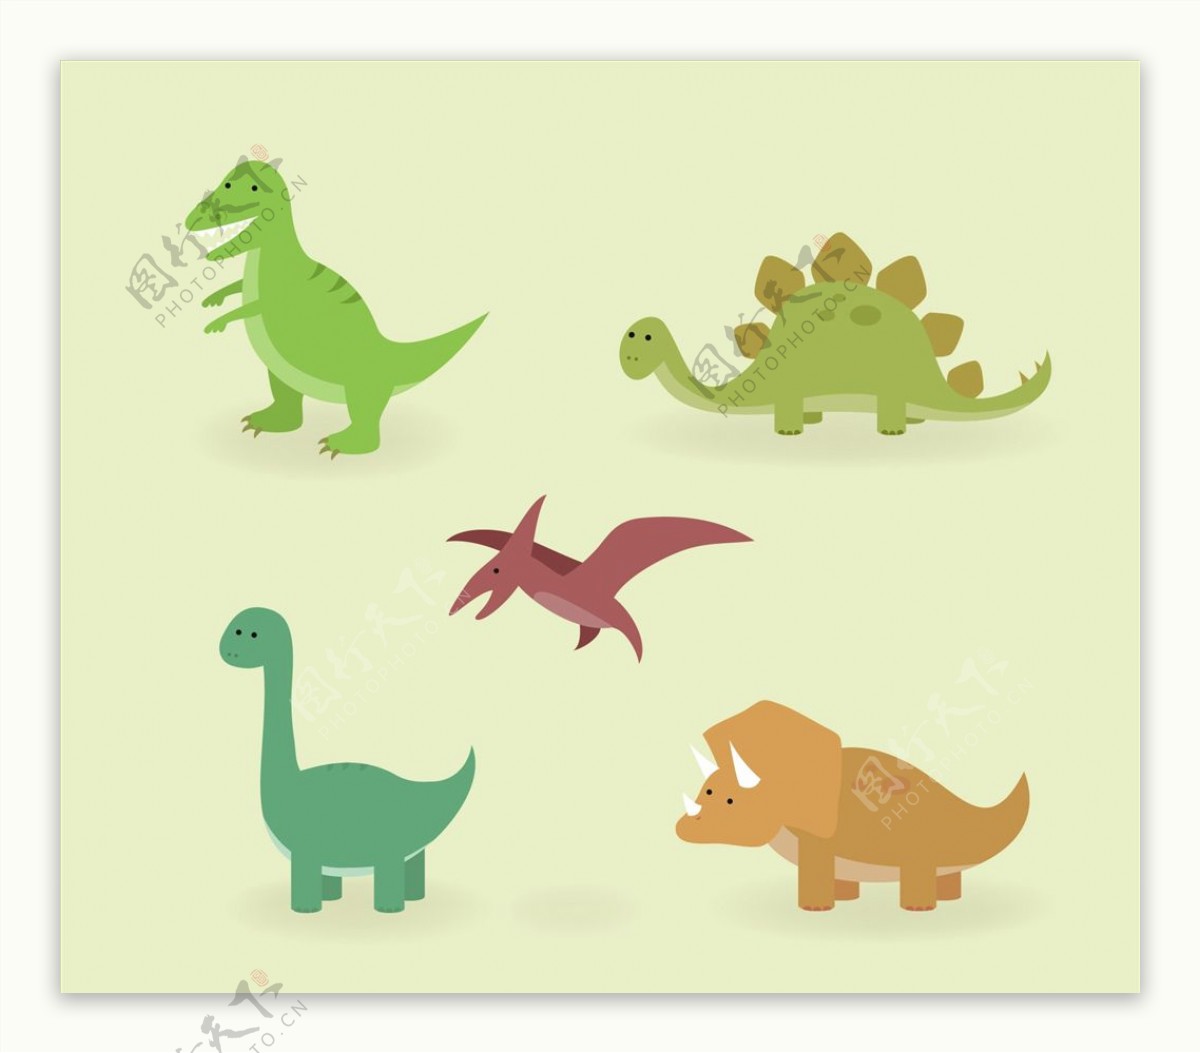 可爱恐龙集